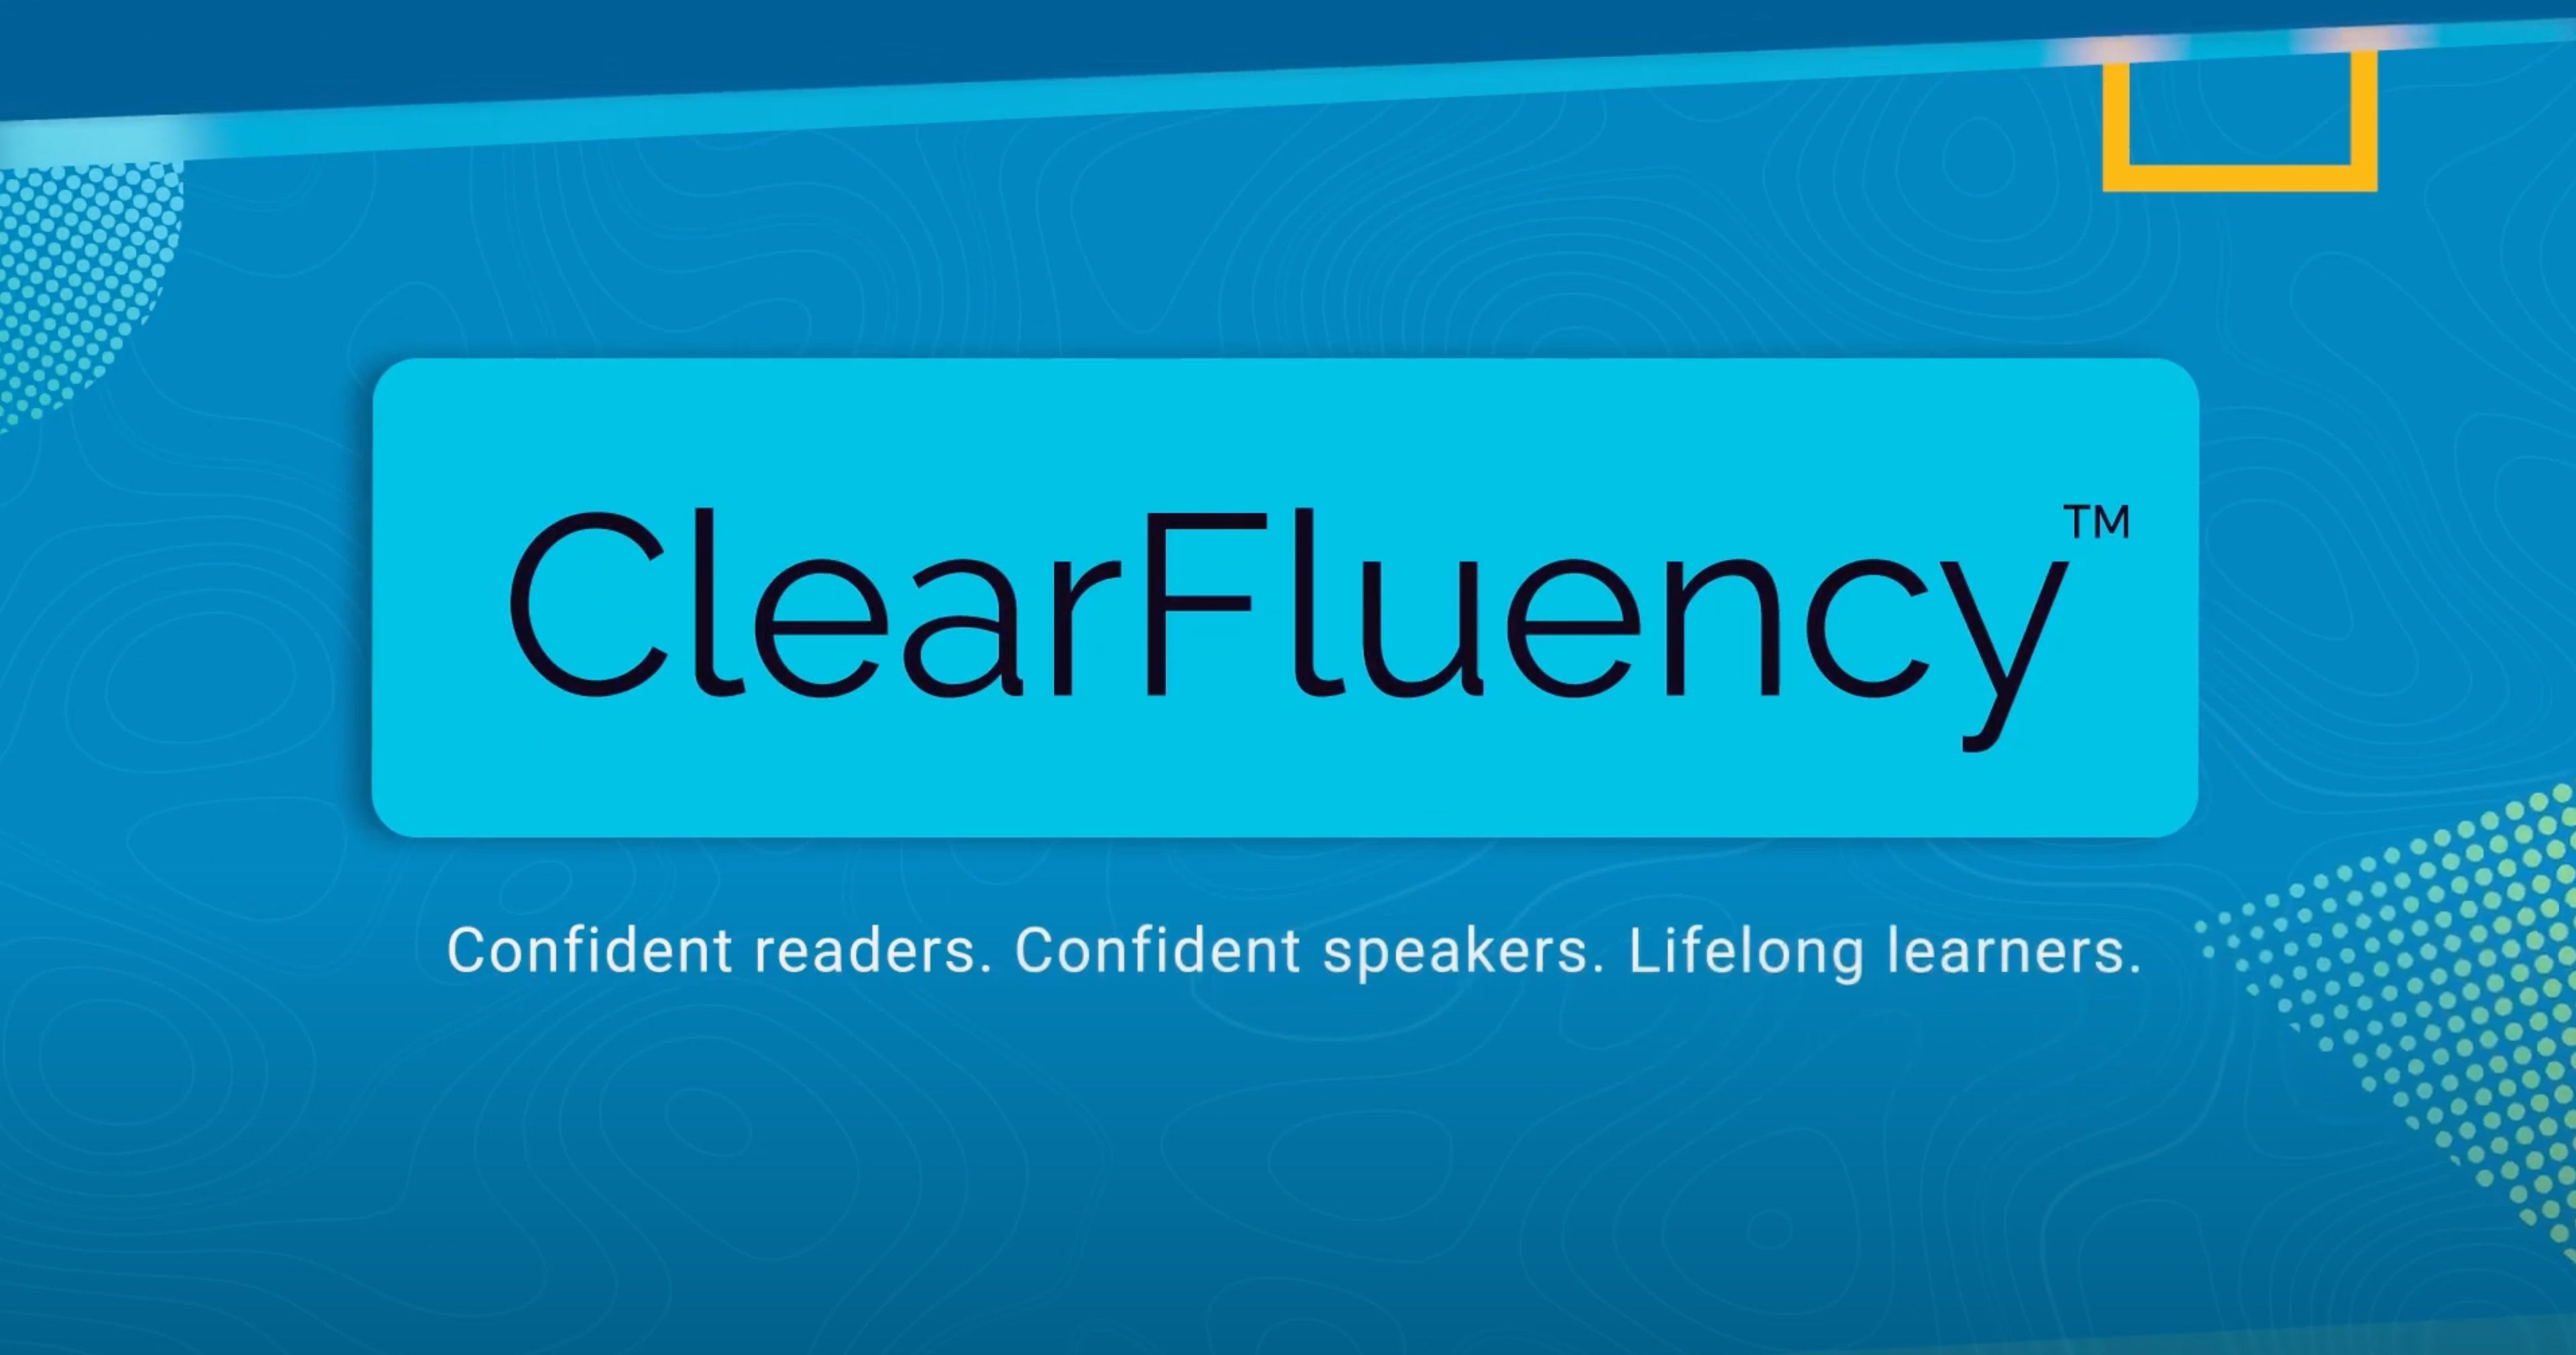 Load video: clear fluency video